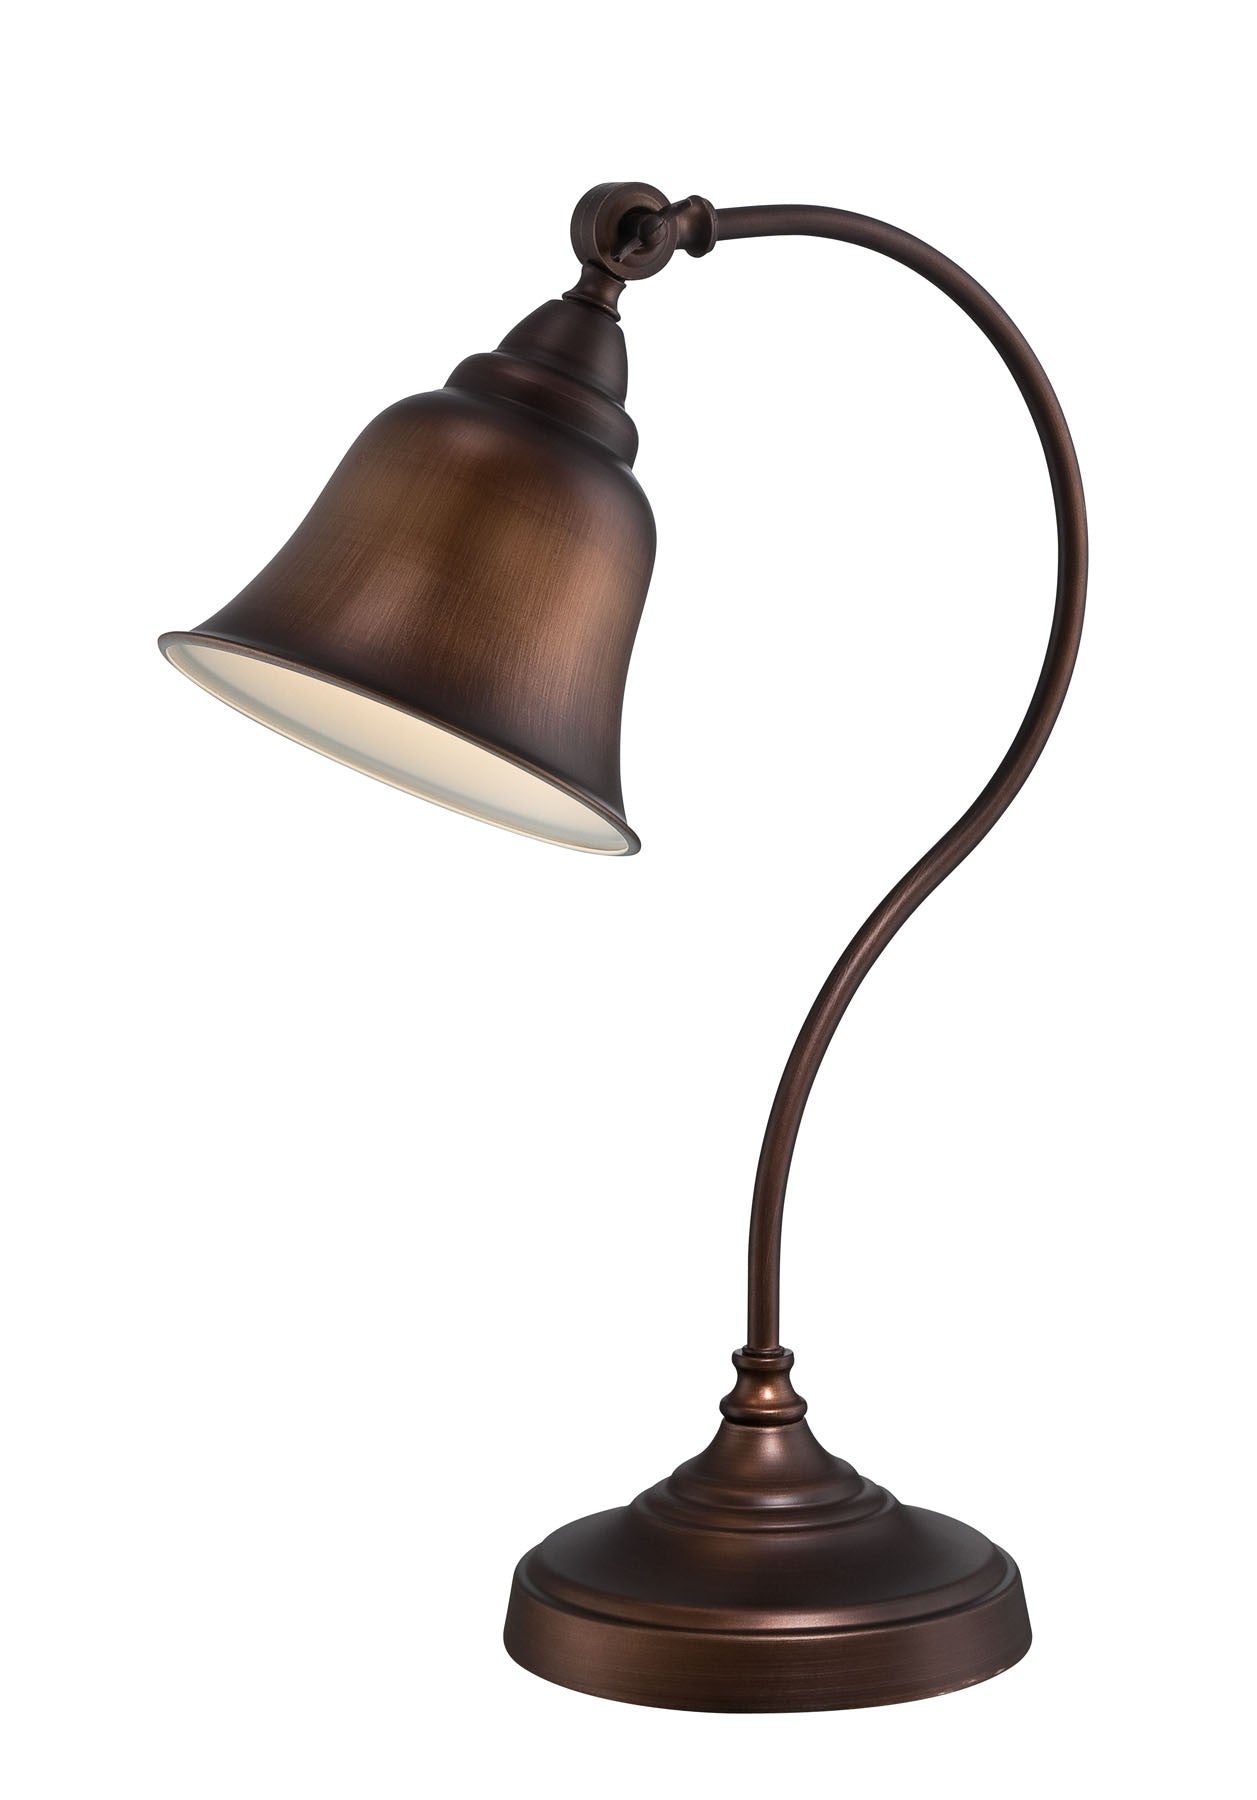 Gianna Desk Table Lamp in Antique Copper, E27, CFL 13W